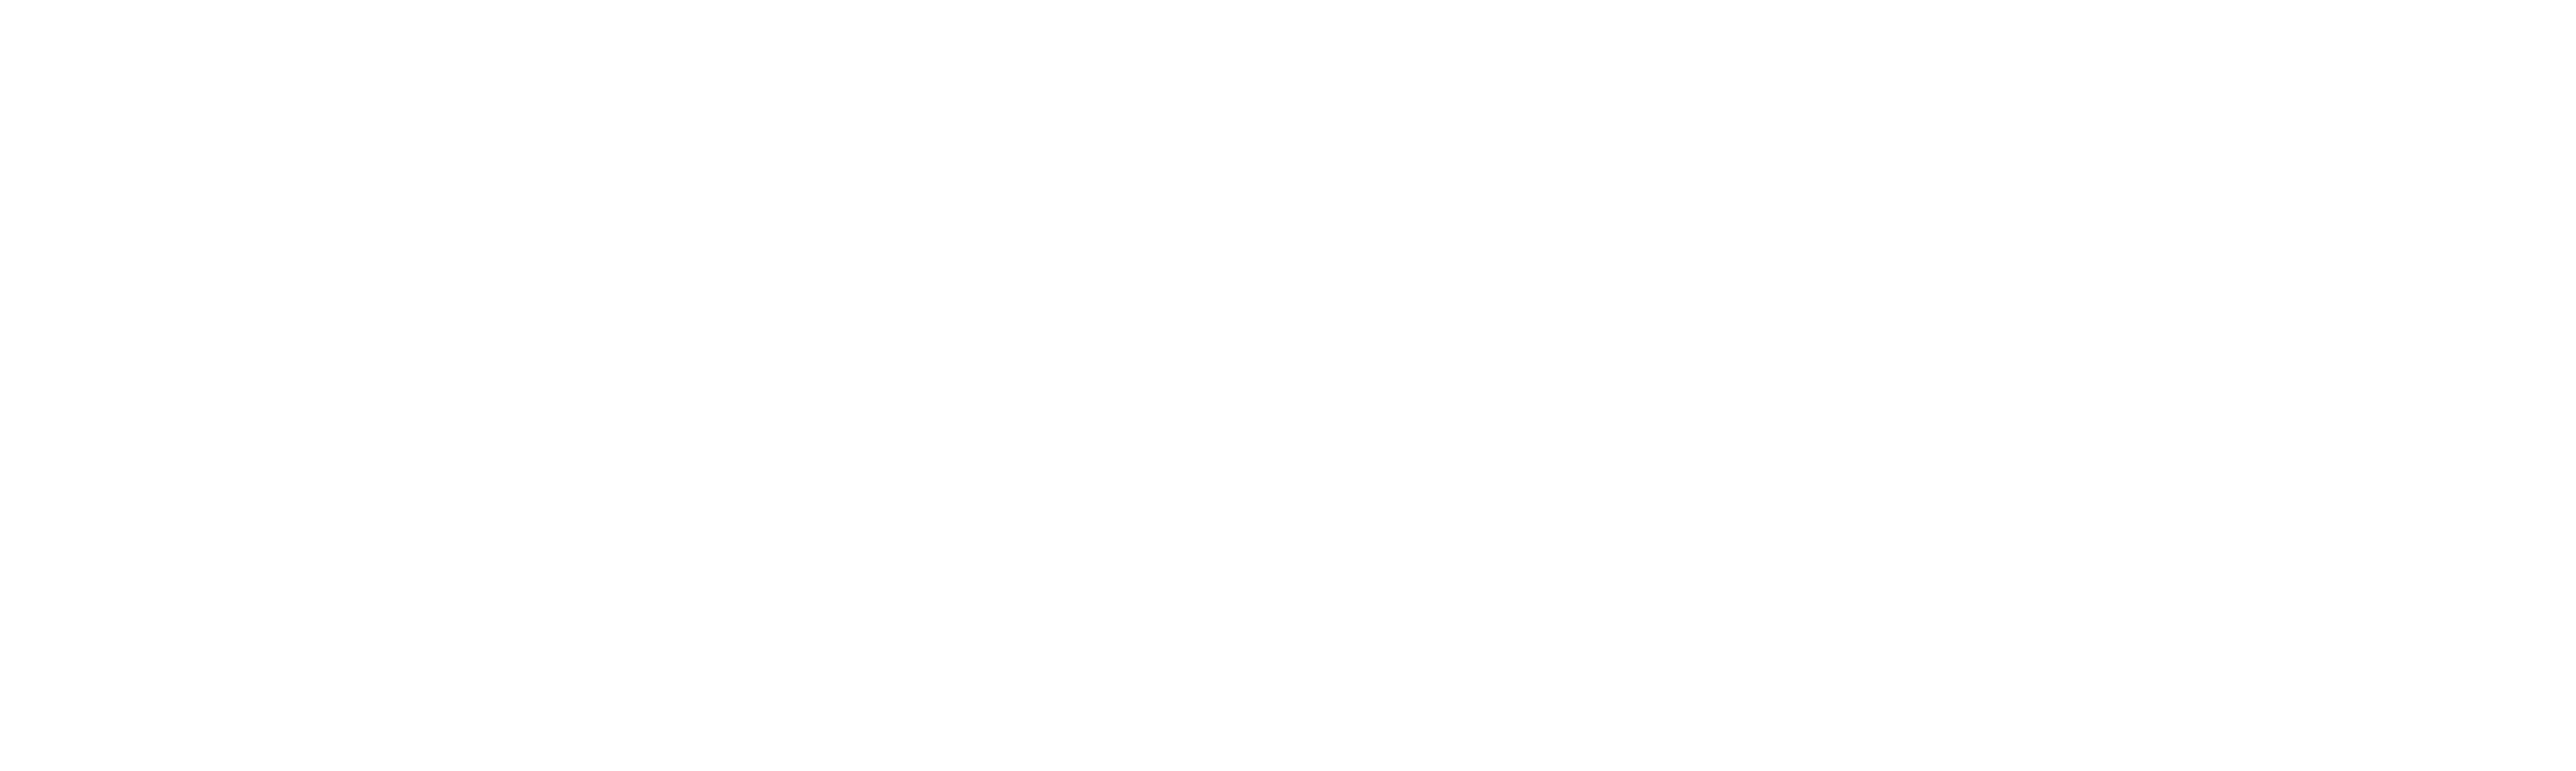 Clicar logo white